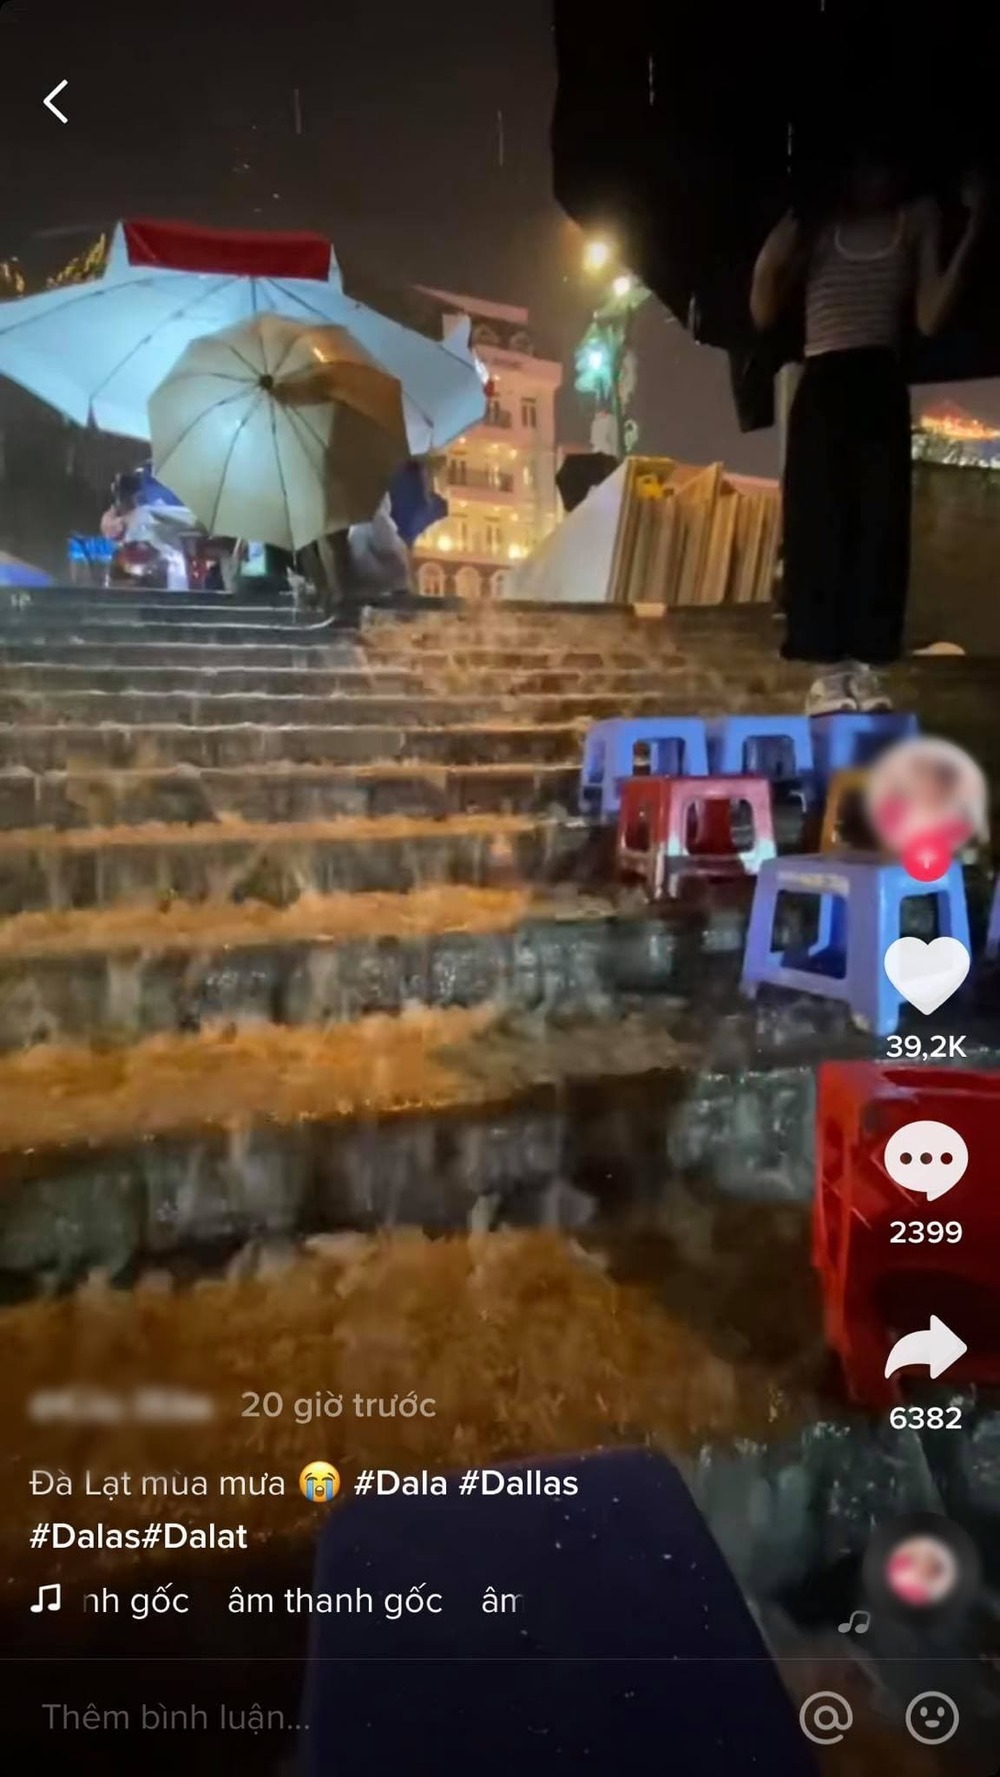  
Đoạn clip quay lại cảnh mùa mưa ở Đà Lạt nhanh chóng thu hút gần triệu lượt xem. (Ảnh: Chụp màn hình)